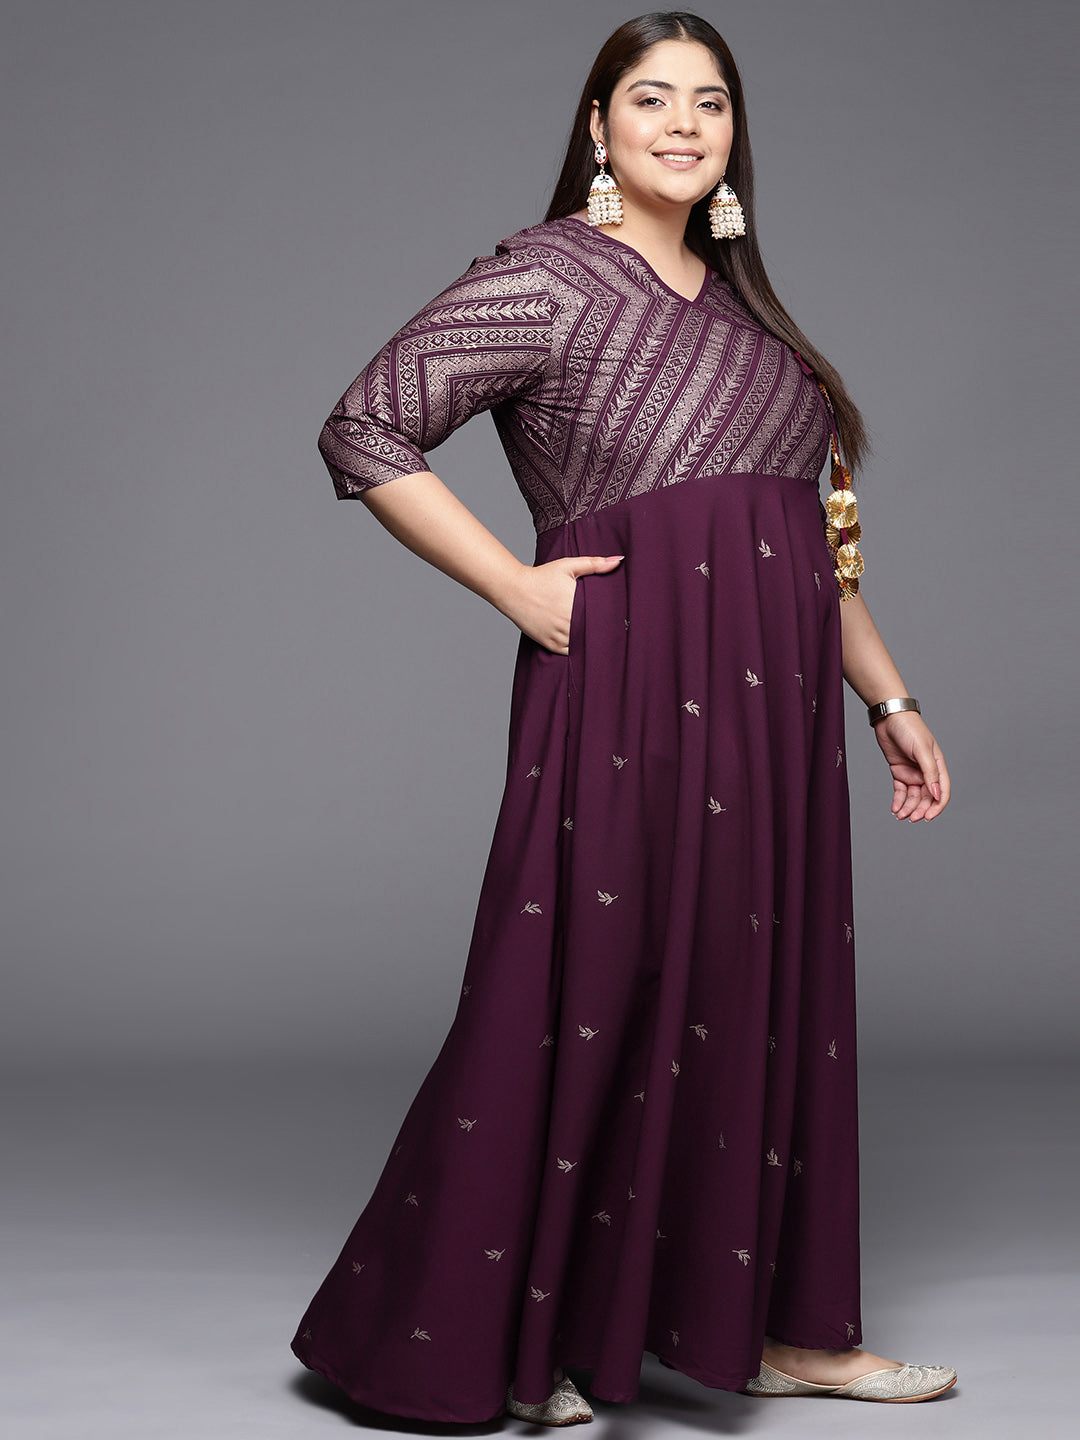 Mahndi dresses | Plus size fashion for women, Party wear indian dresses, Indian  dresses